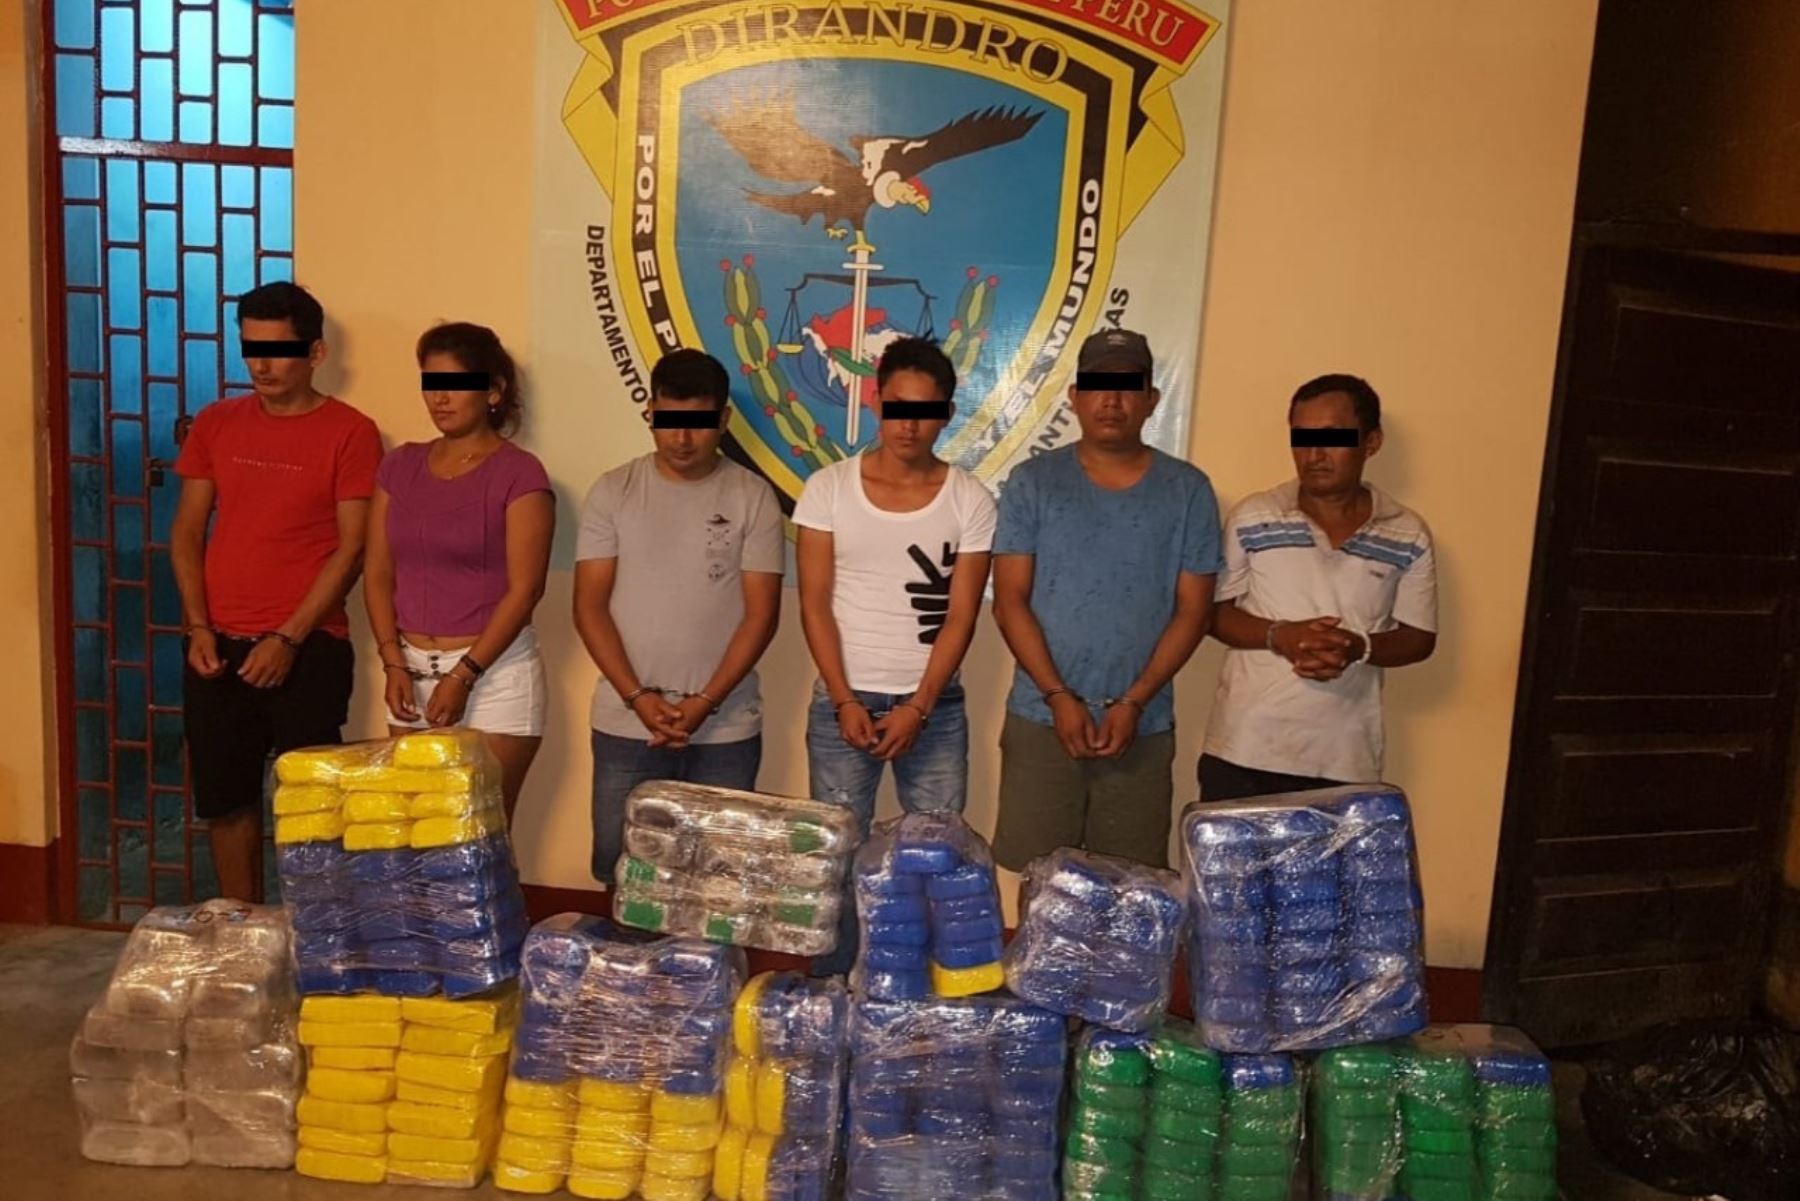 Agentes de la Dirección Antidrogas (Dirandro) de la Policía Nacional del Perú (PNP) desarticularon una organización criminal dedicada al tráfico ilícito de drogas en Pucallpa y capturaron a siete de sus integrantes, a quienes incautaron 292.281 kilos de cocaína.